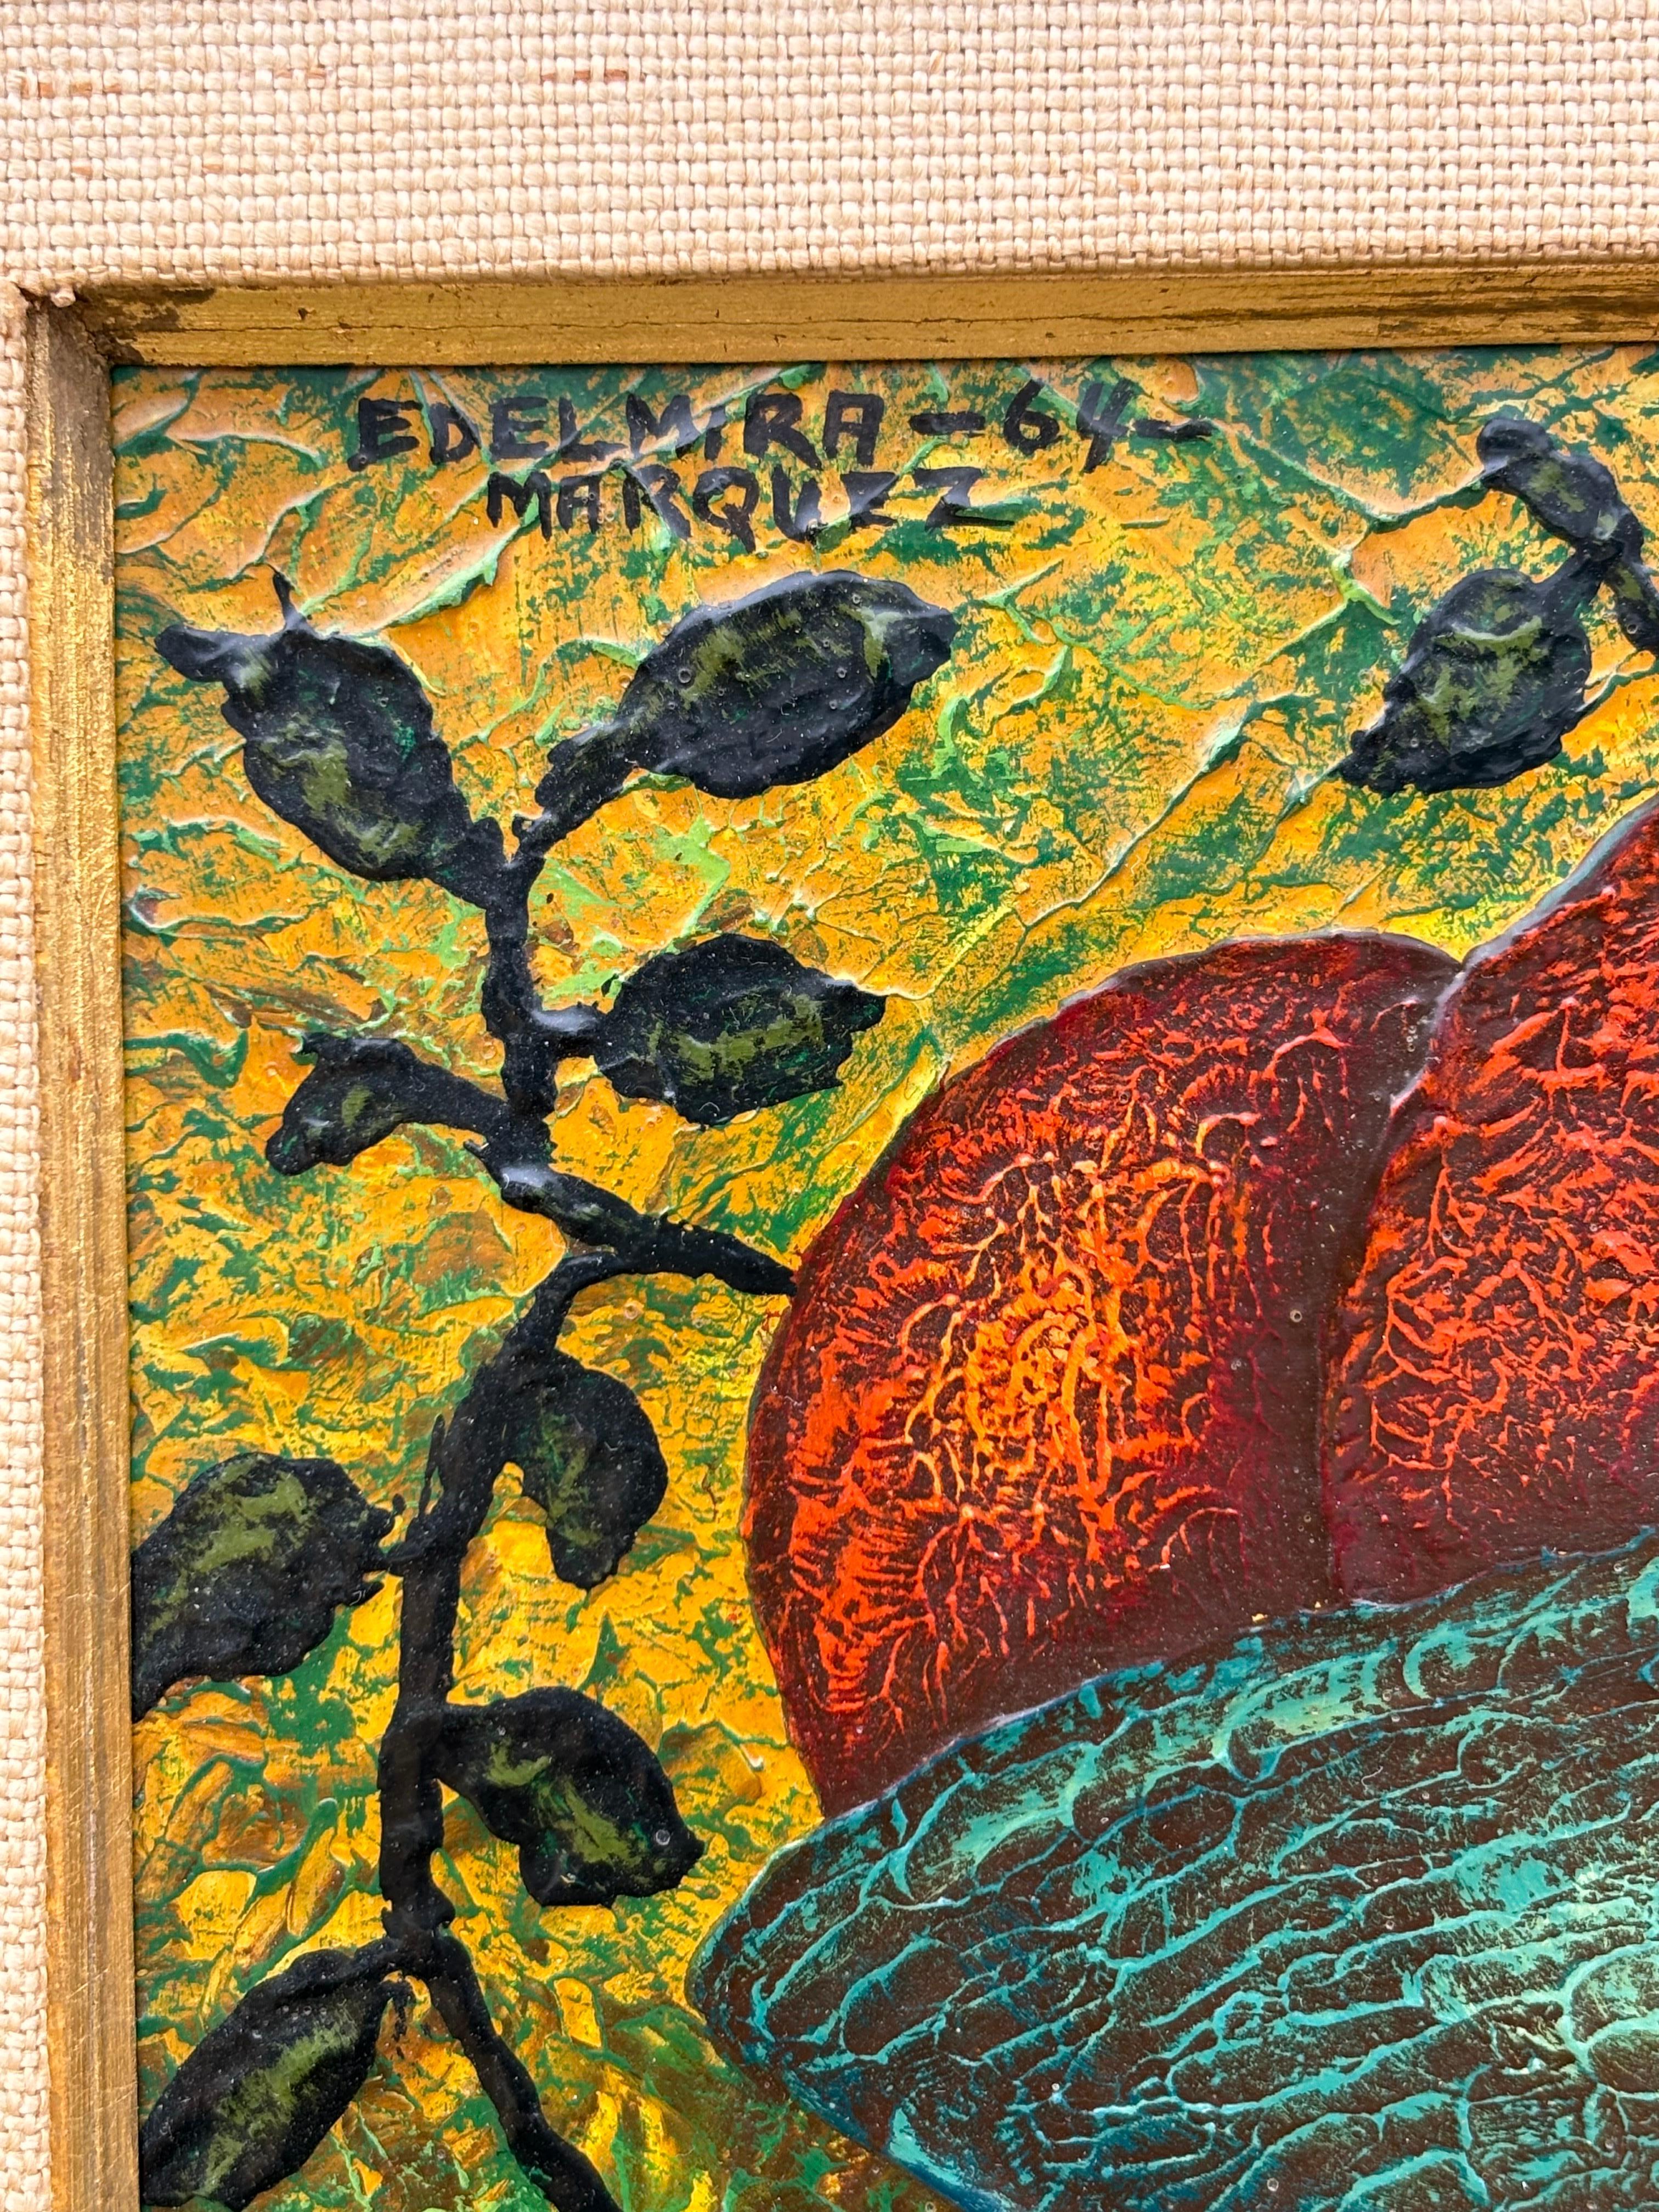 Edelmira Marquez Öl auf Karton eines jungen Mädchens.  Mexikanischer Künstler, signiert und datiert oben links.  Die Oberfläche wird durch Texturen im Hut und in den Früchten aufgebaut.  Sieht aus wie ein Originalrahmen.  Der Rahmen weist eine